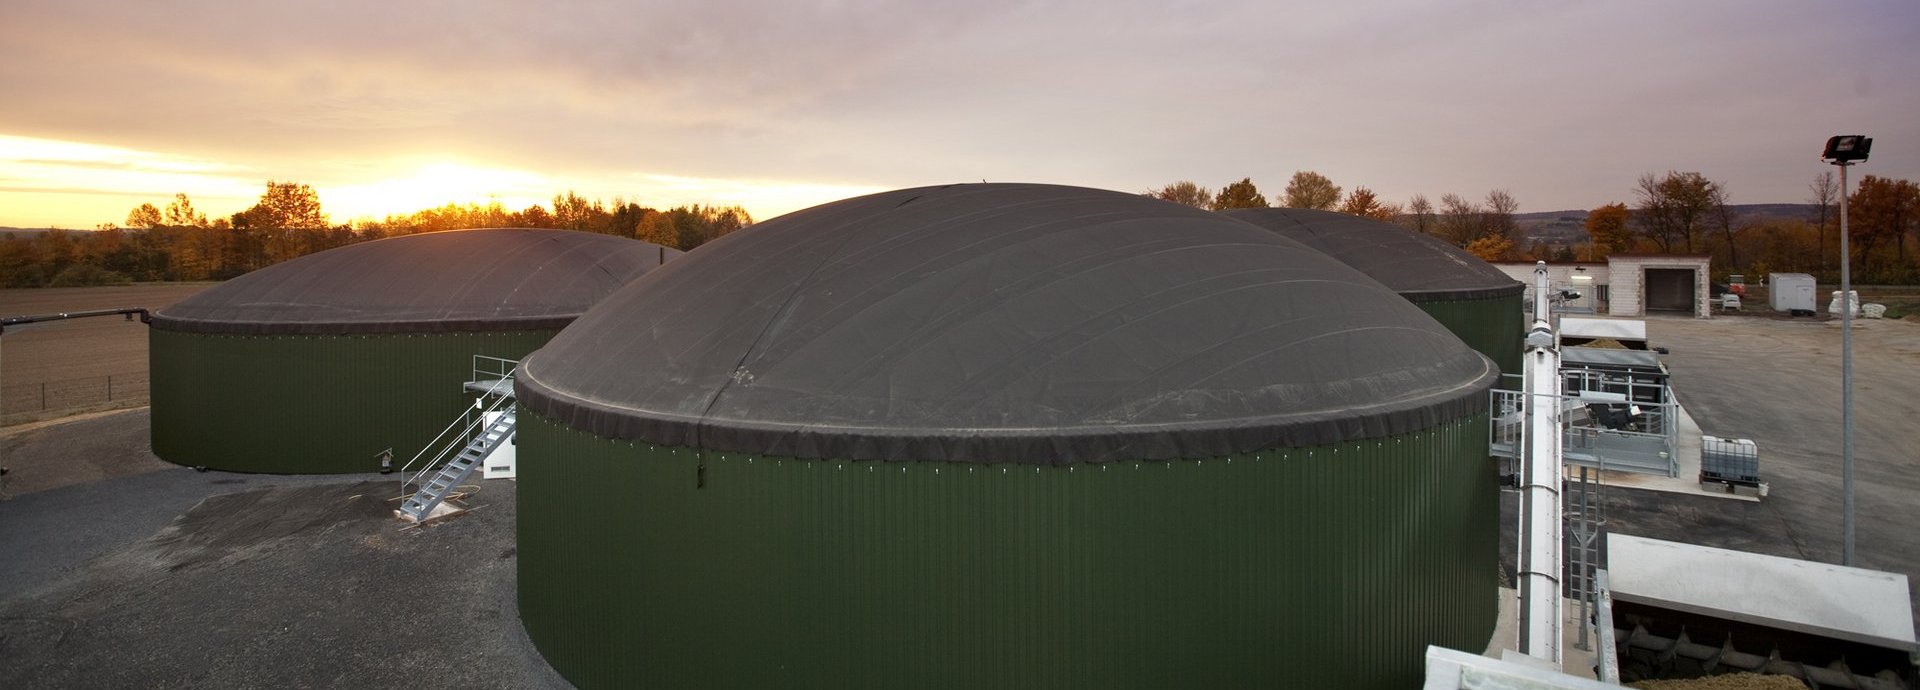 Biogasanlage Wollbrandshausen vor bewölktem Himmel und Sonnenuntergang